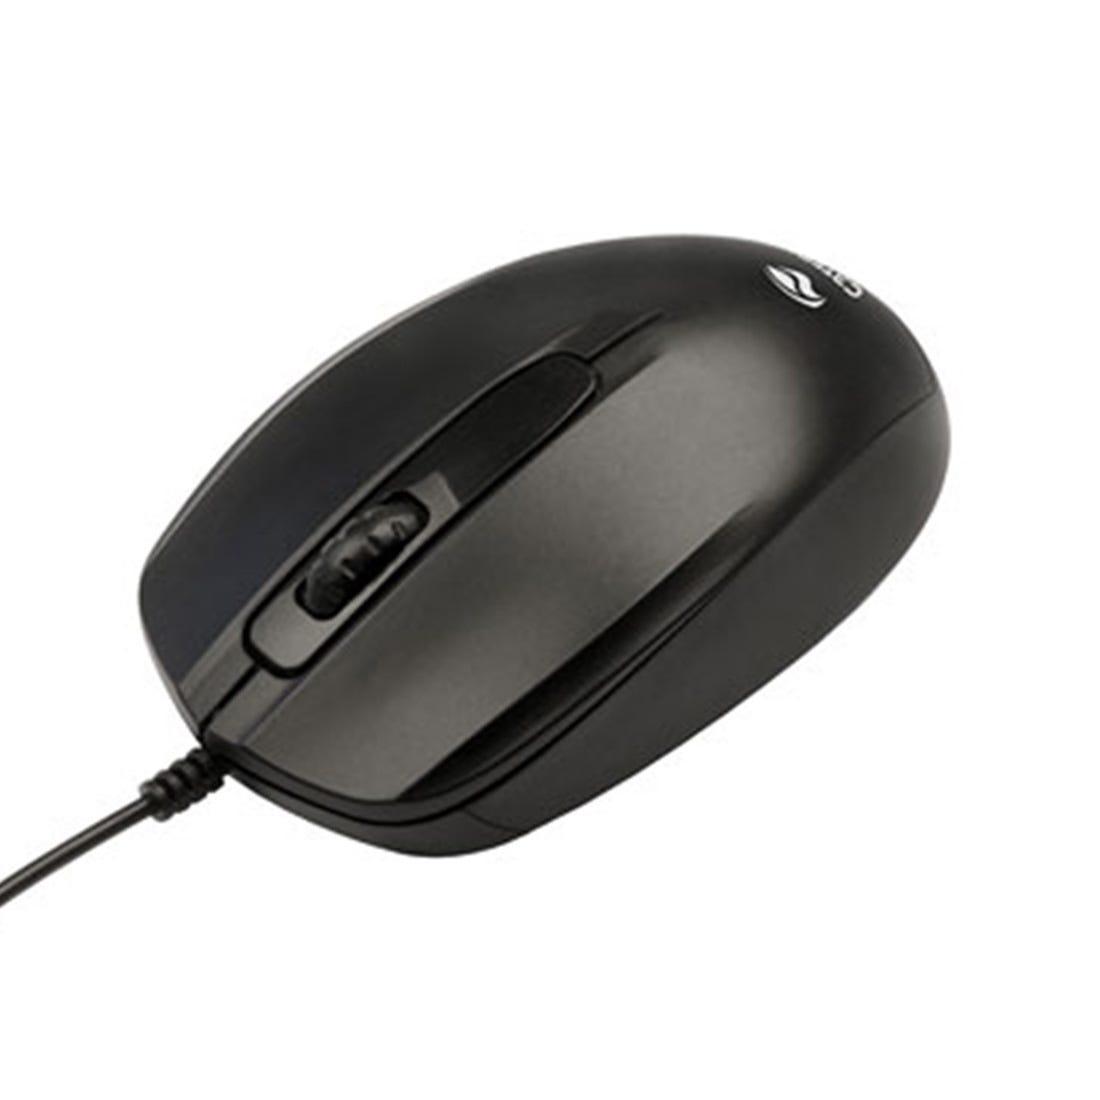 Mouse C3 Tech USB 3B 1000 DPI Preto - MS-30BK - Mega Market